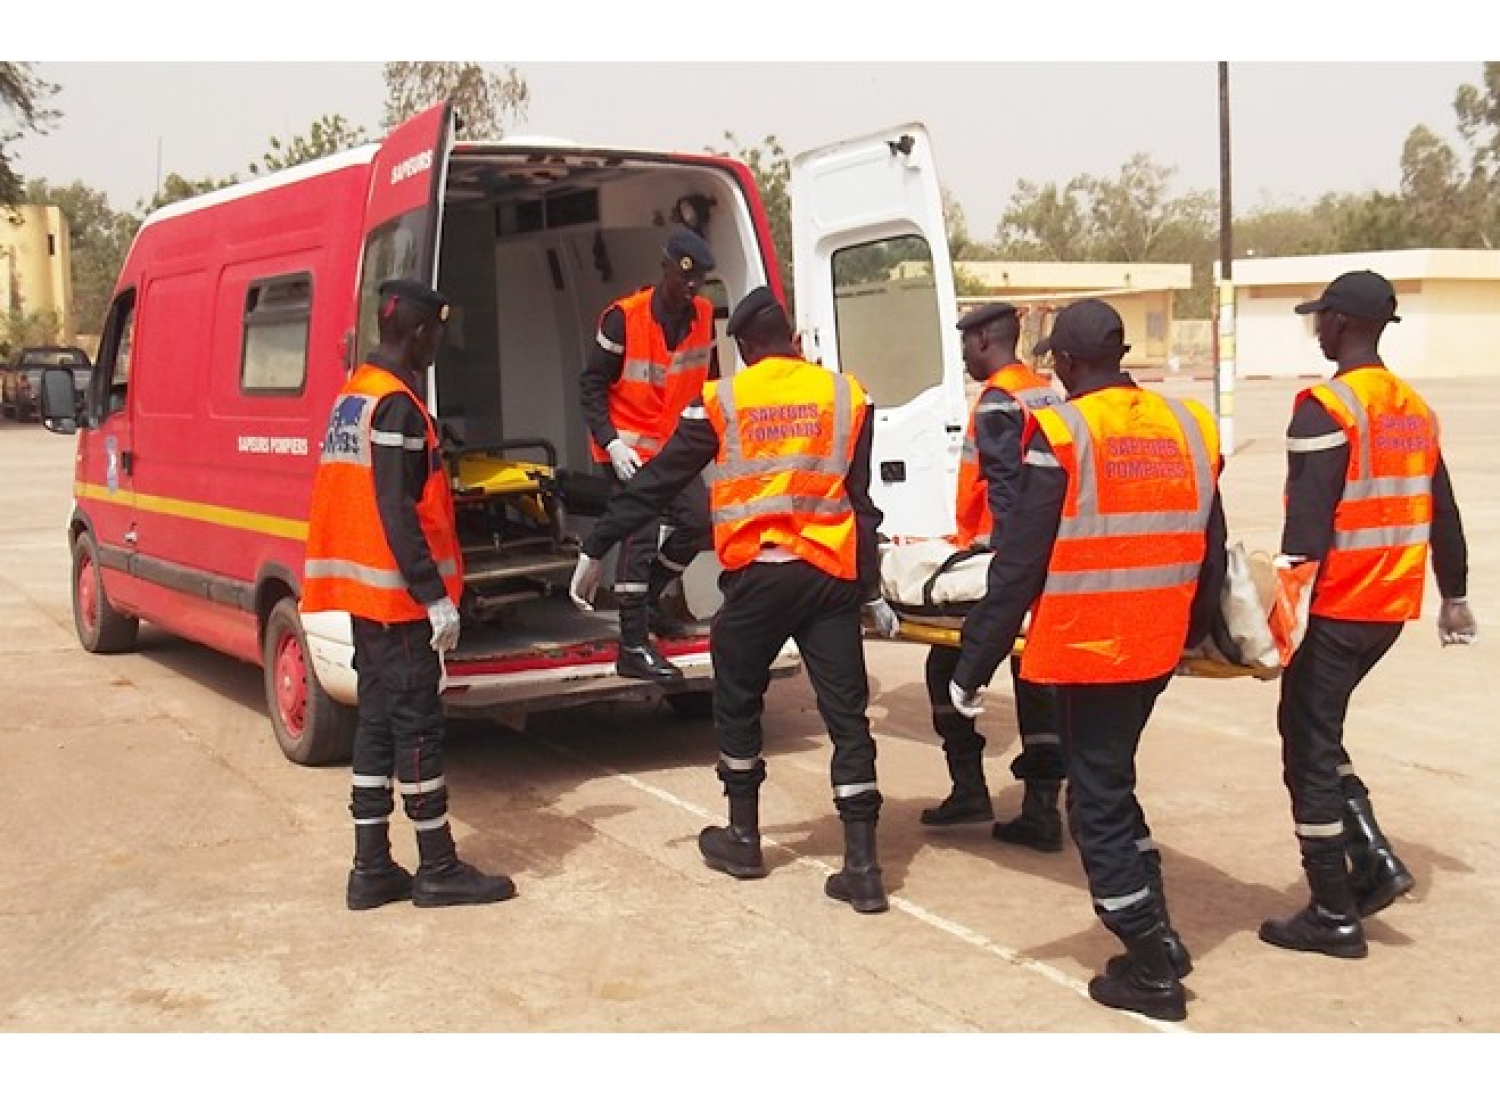 Kédougou : un accident de la circulation fait 1 mort et 6 blessés